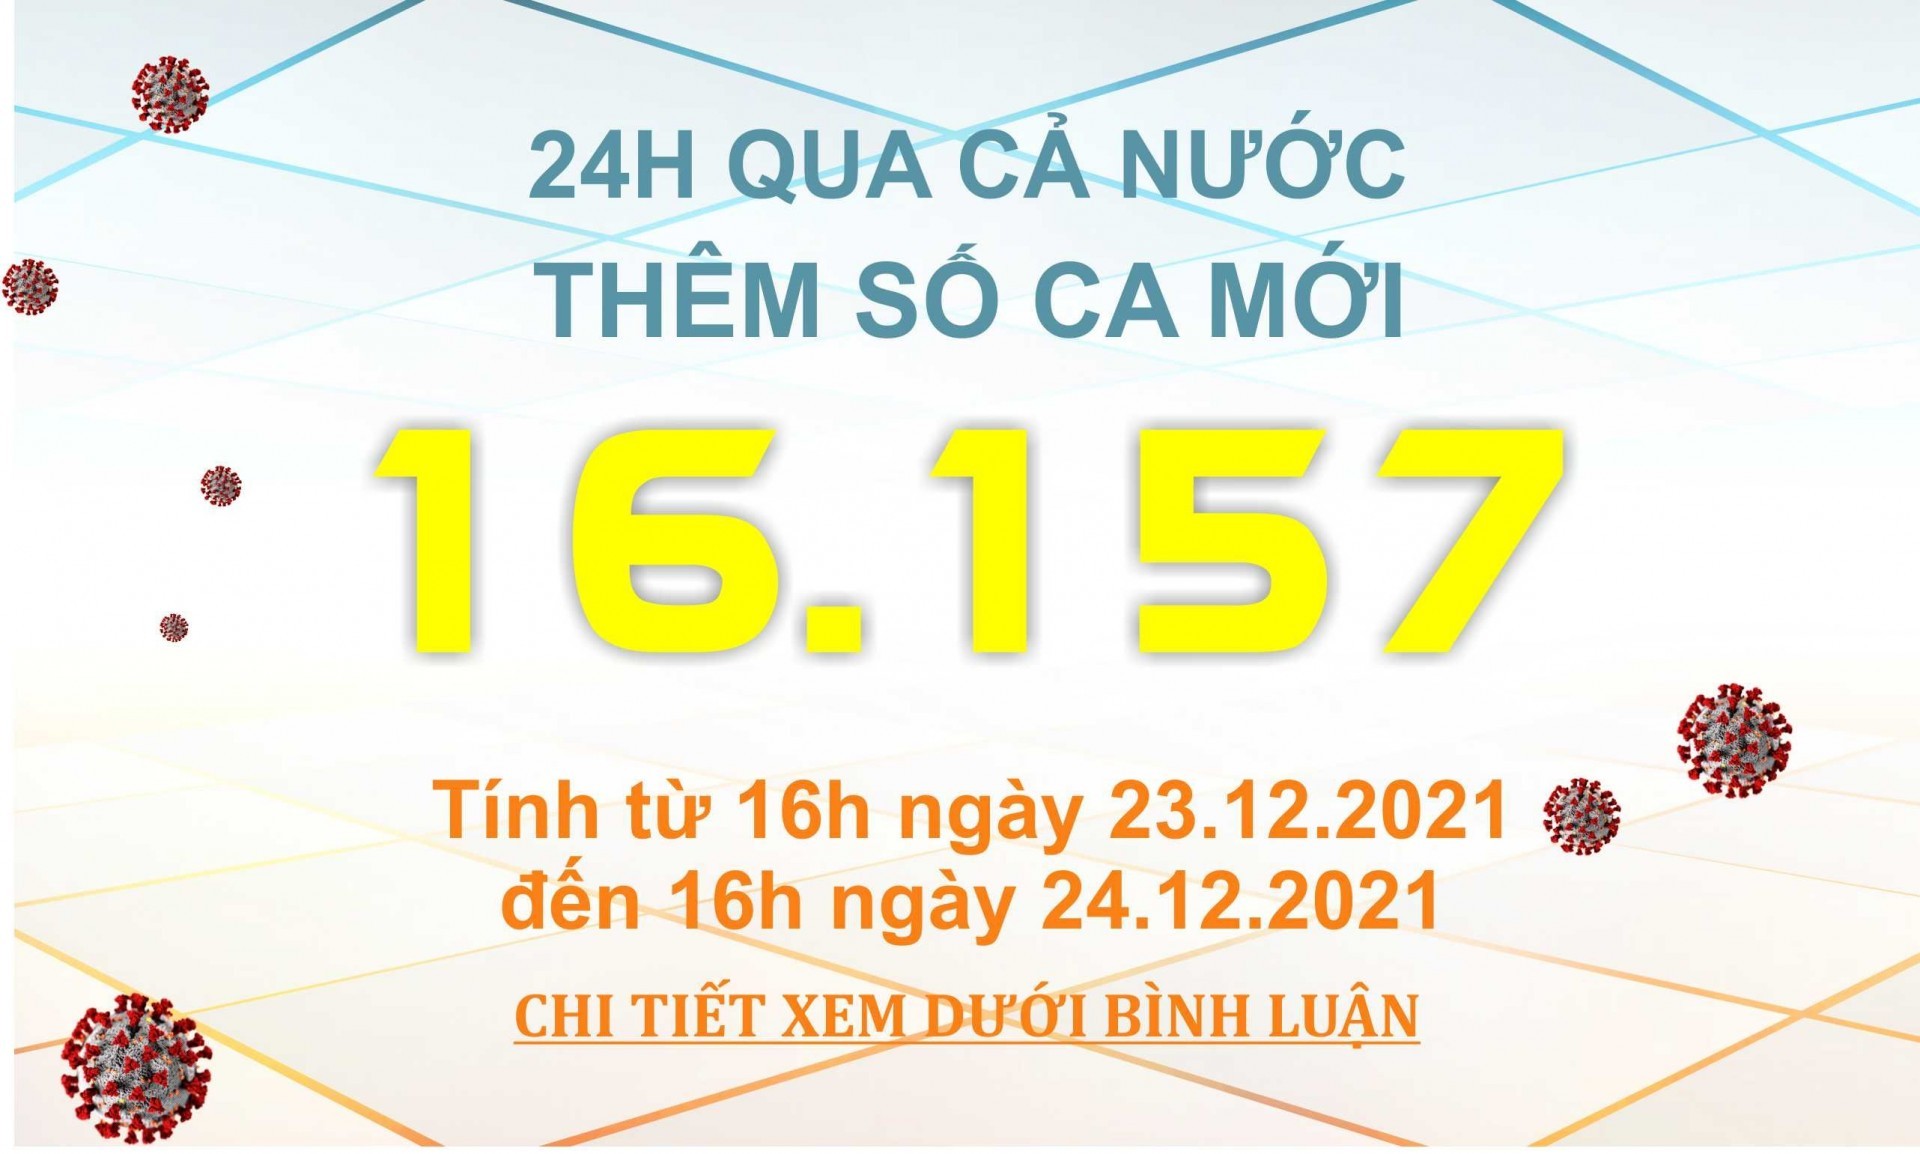 Ngày 24/12: Có 16.157 ca mắc COVID-19 tại 62 tỉnh, thành; Hà Nội vẫn nhiều nhất với 1.834 ca